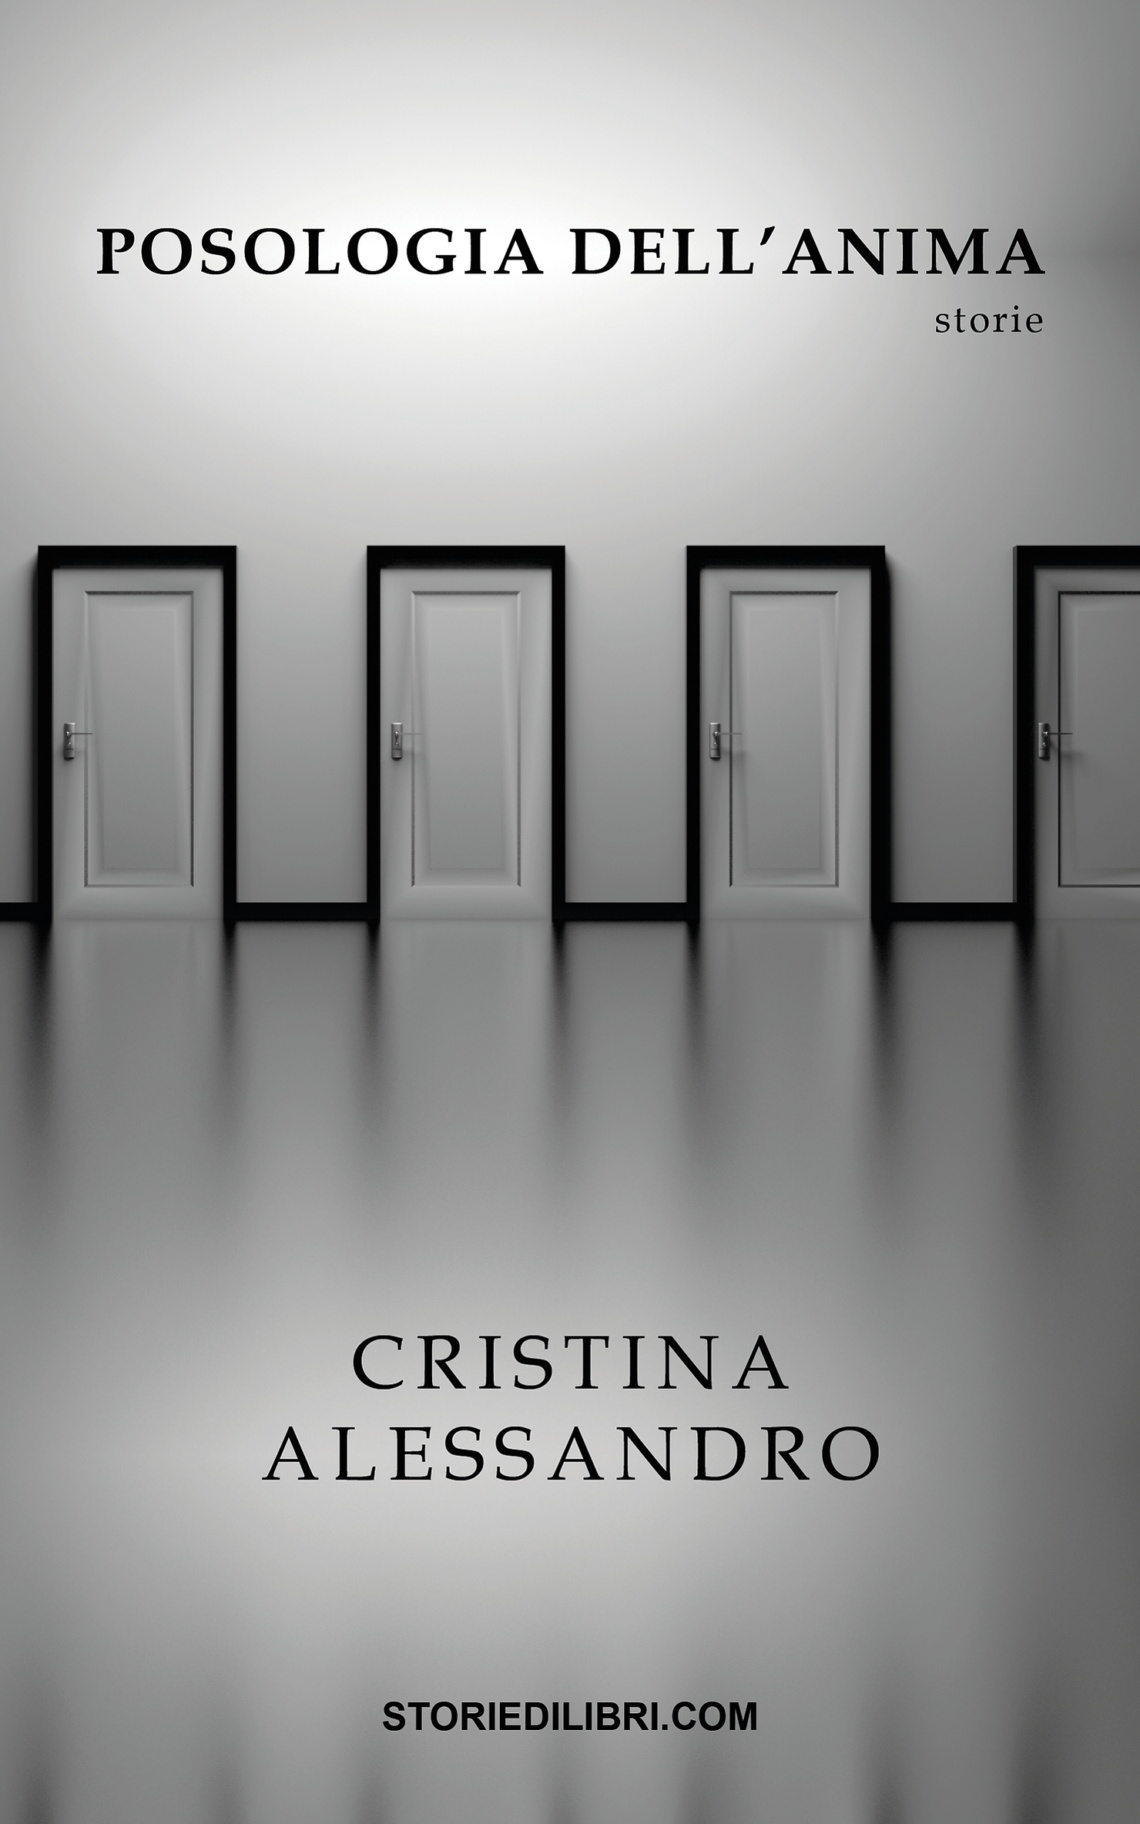 Posologia dell’anima di Cristina Alessandro – A cura di Storie di Libri